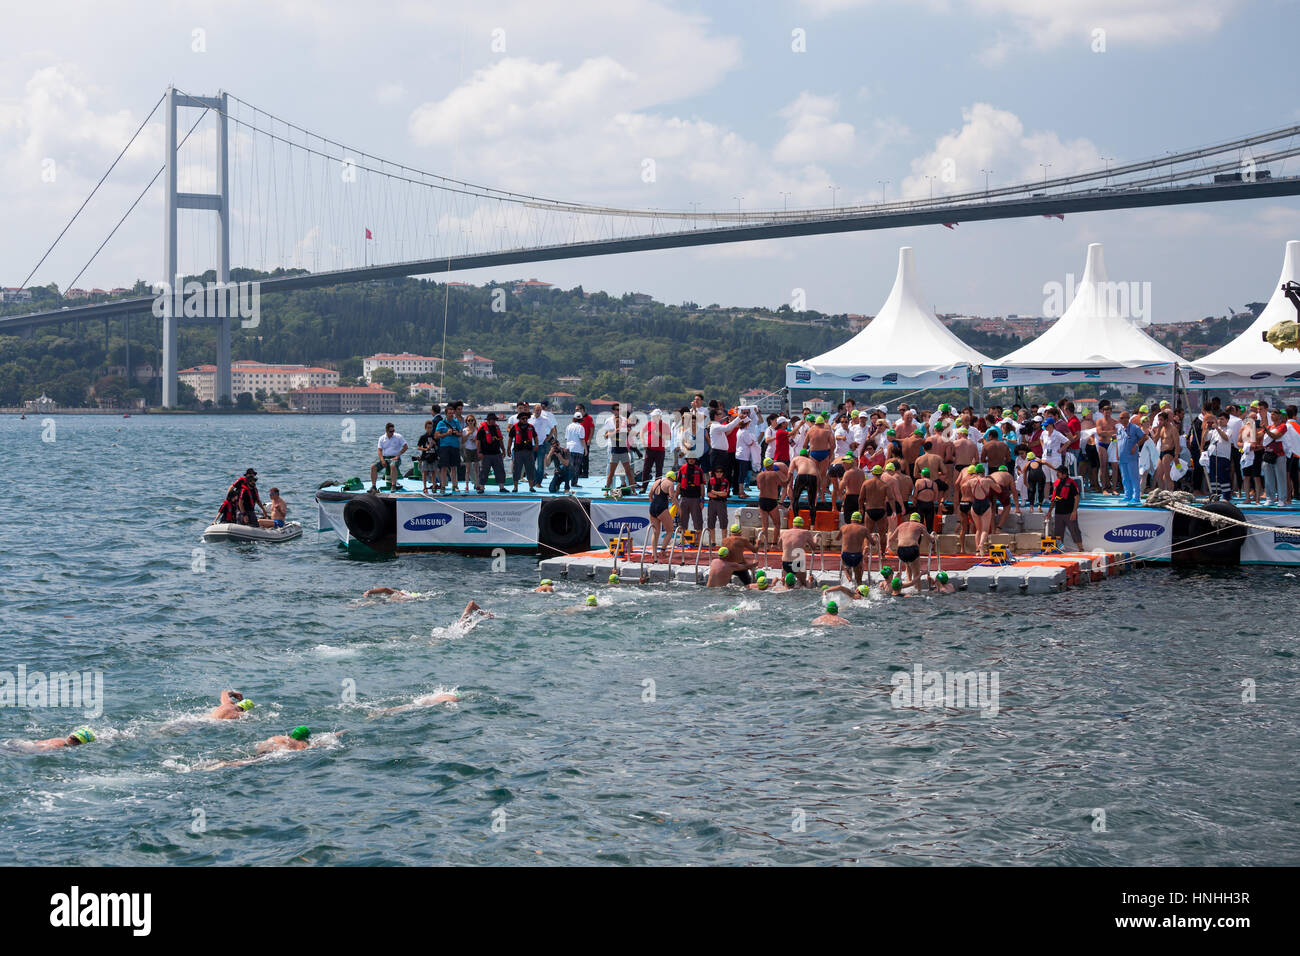 Istanbul, 20. Juli 2014 - die traditionelle 26. Samsung Bosporus Cross Continental Wettschwimmen, mit 1729 Sportler aus 45 Ländern fand vergangenen 21. Juli - berichteten die örtlichen Medien. Stockfoto